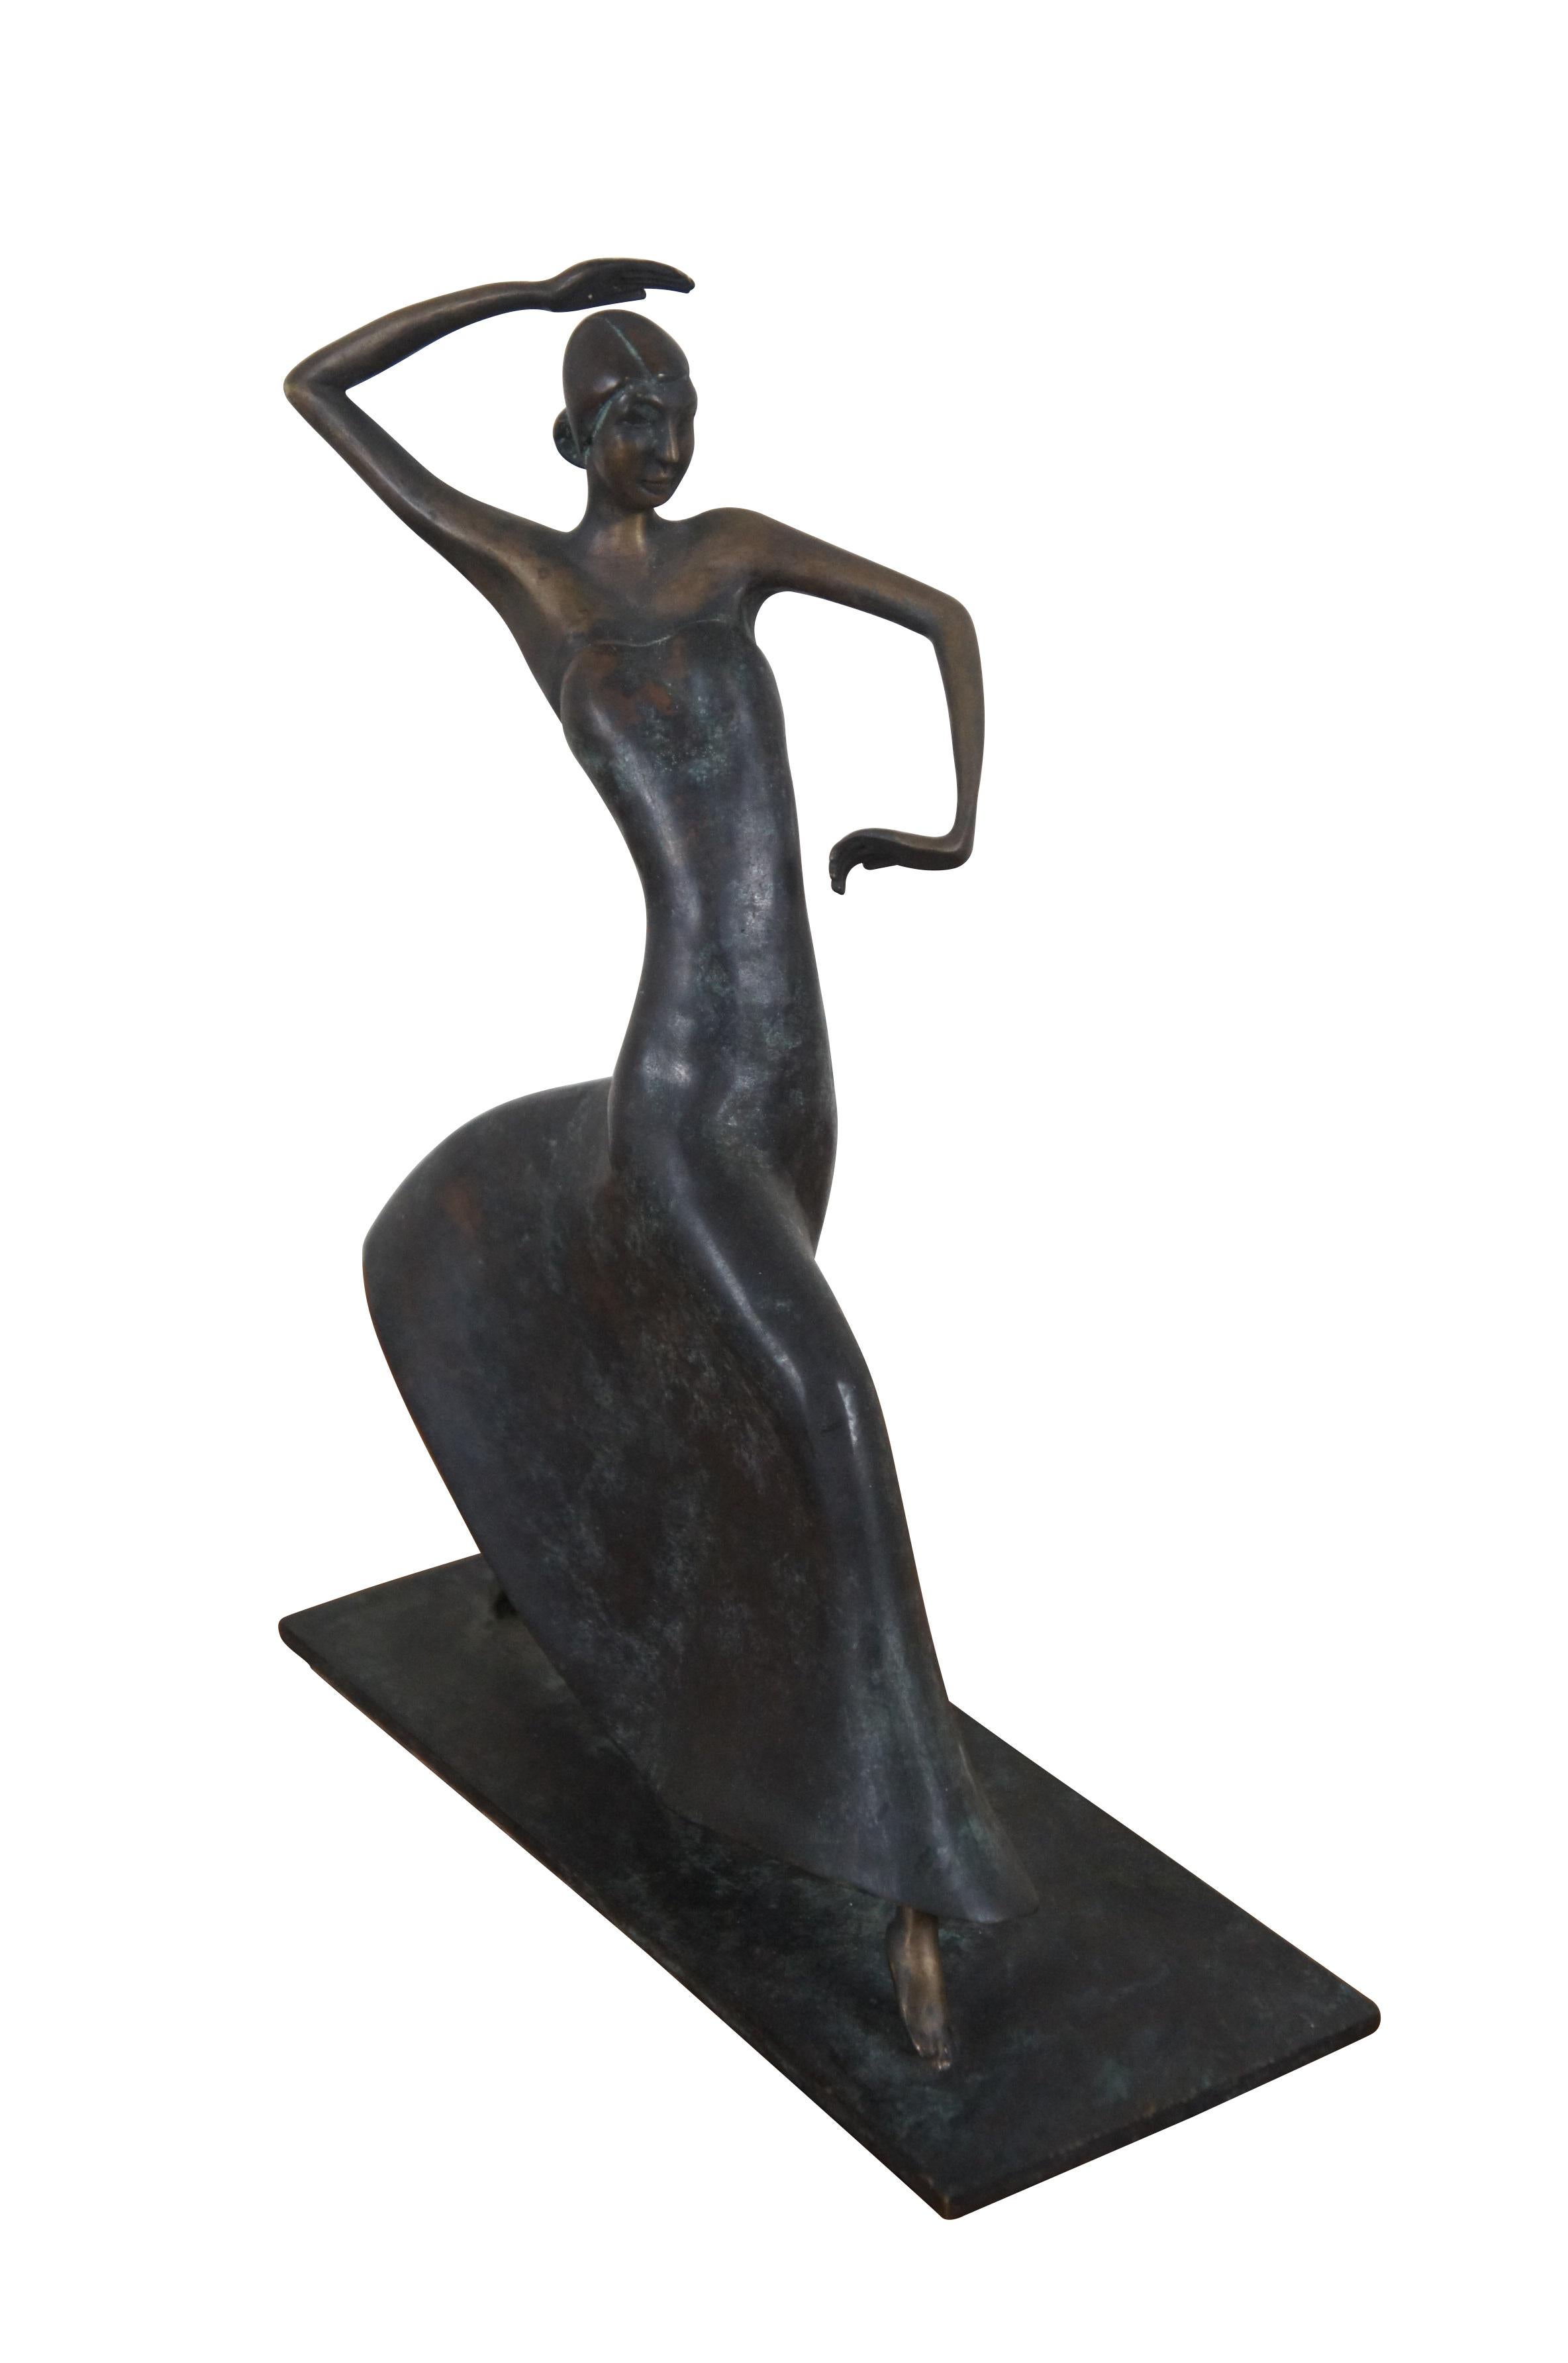 Rare statuette / figurine en bronze de la fin du XXe siècle de Maitland Smith, inspirée de la sculpture art déco de Karl Hagenauer représentant la danseuse Joséphine Baker dans les années 1930. Fabriqué à la main aux Philippines.

